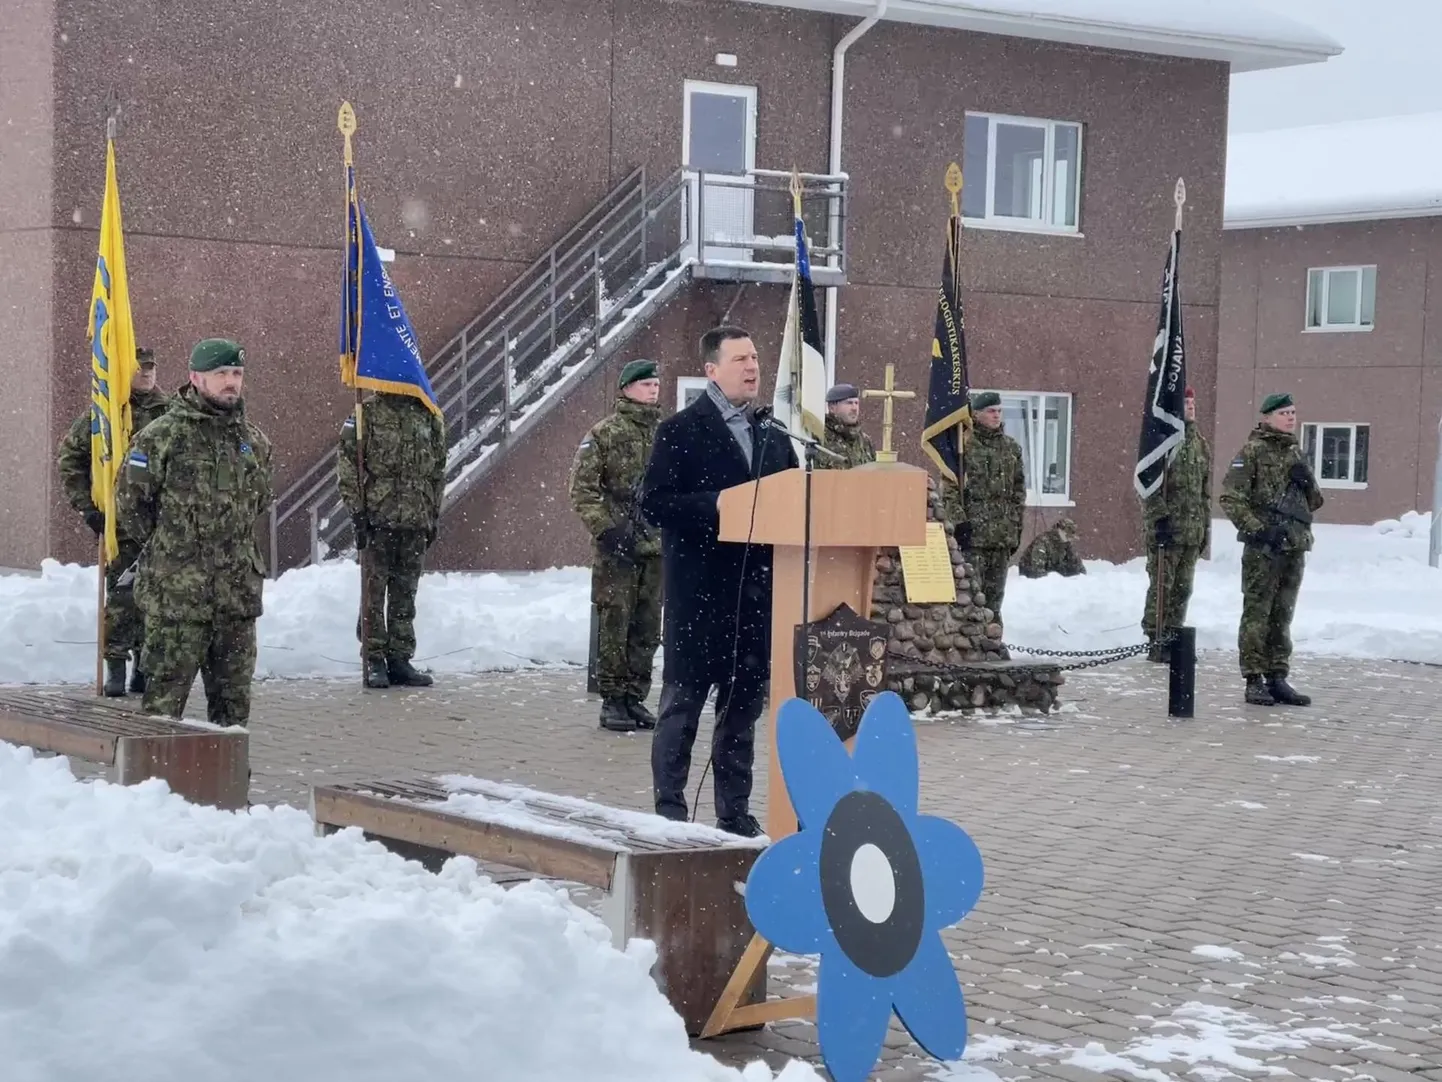 Riigikogu aseesimees Jüri Ratas pidas kõne veteranipäeva tähistaval hukkunud kaitseväelaste mälestustseremoonial Tapa sõjaväelinnakus.